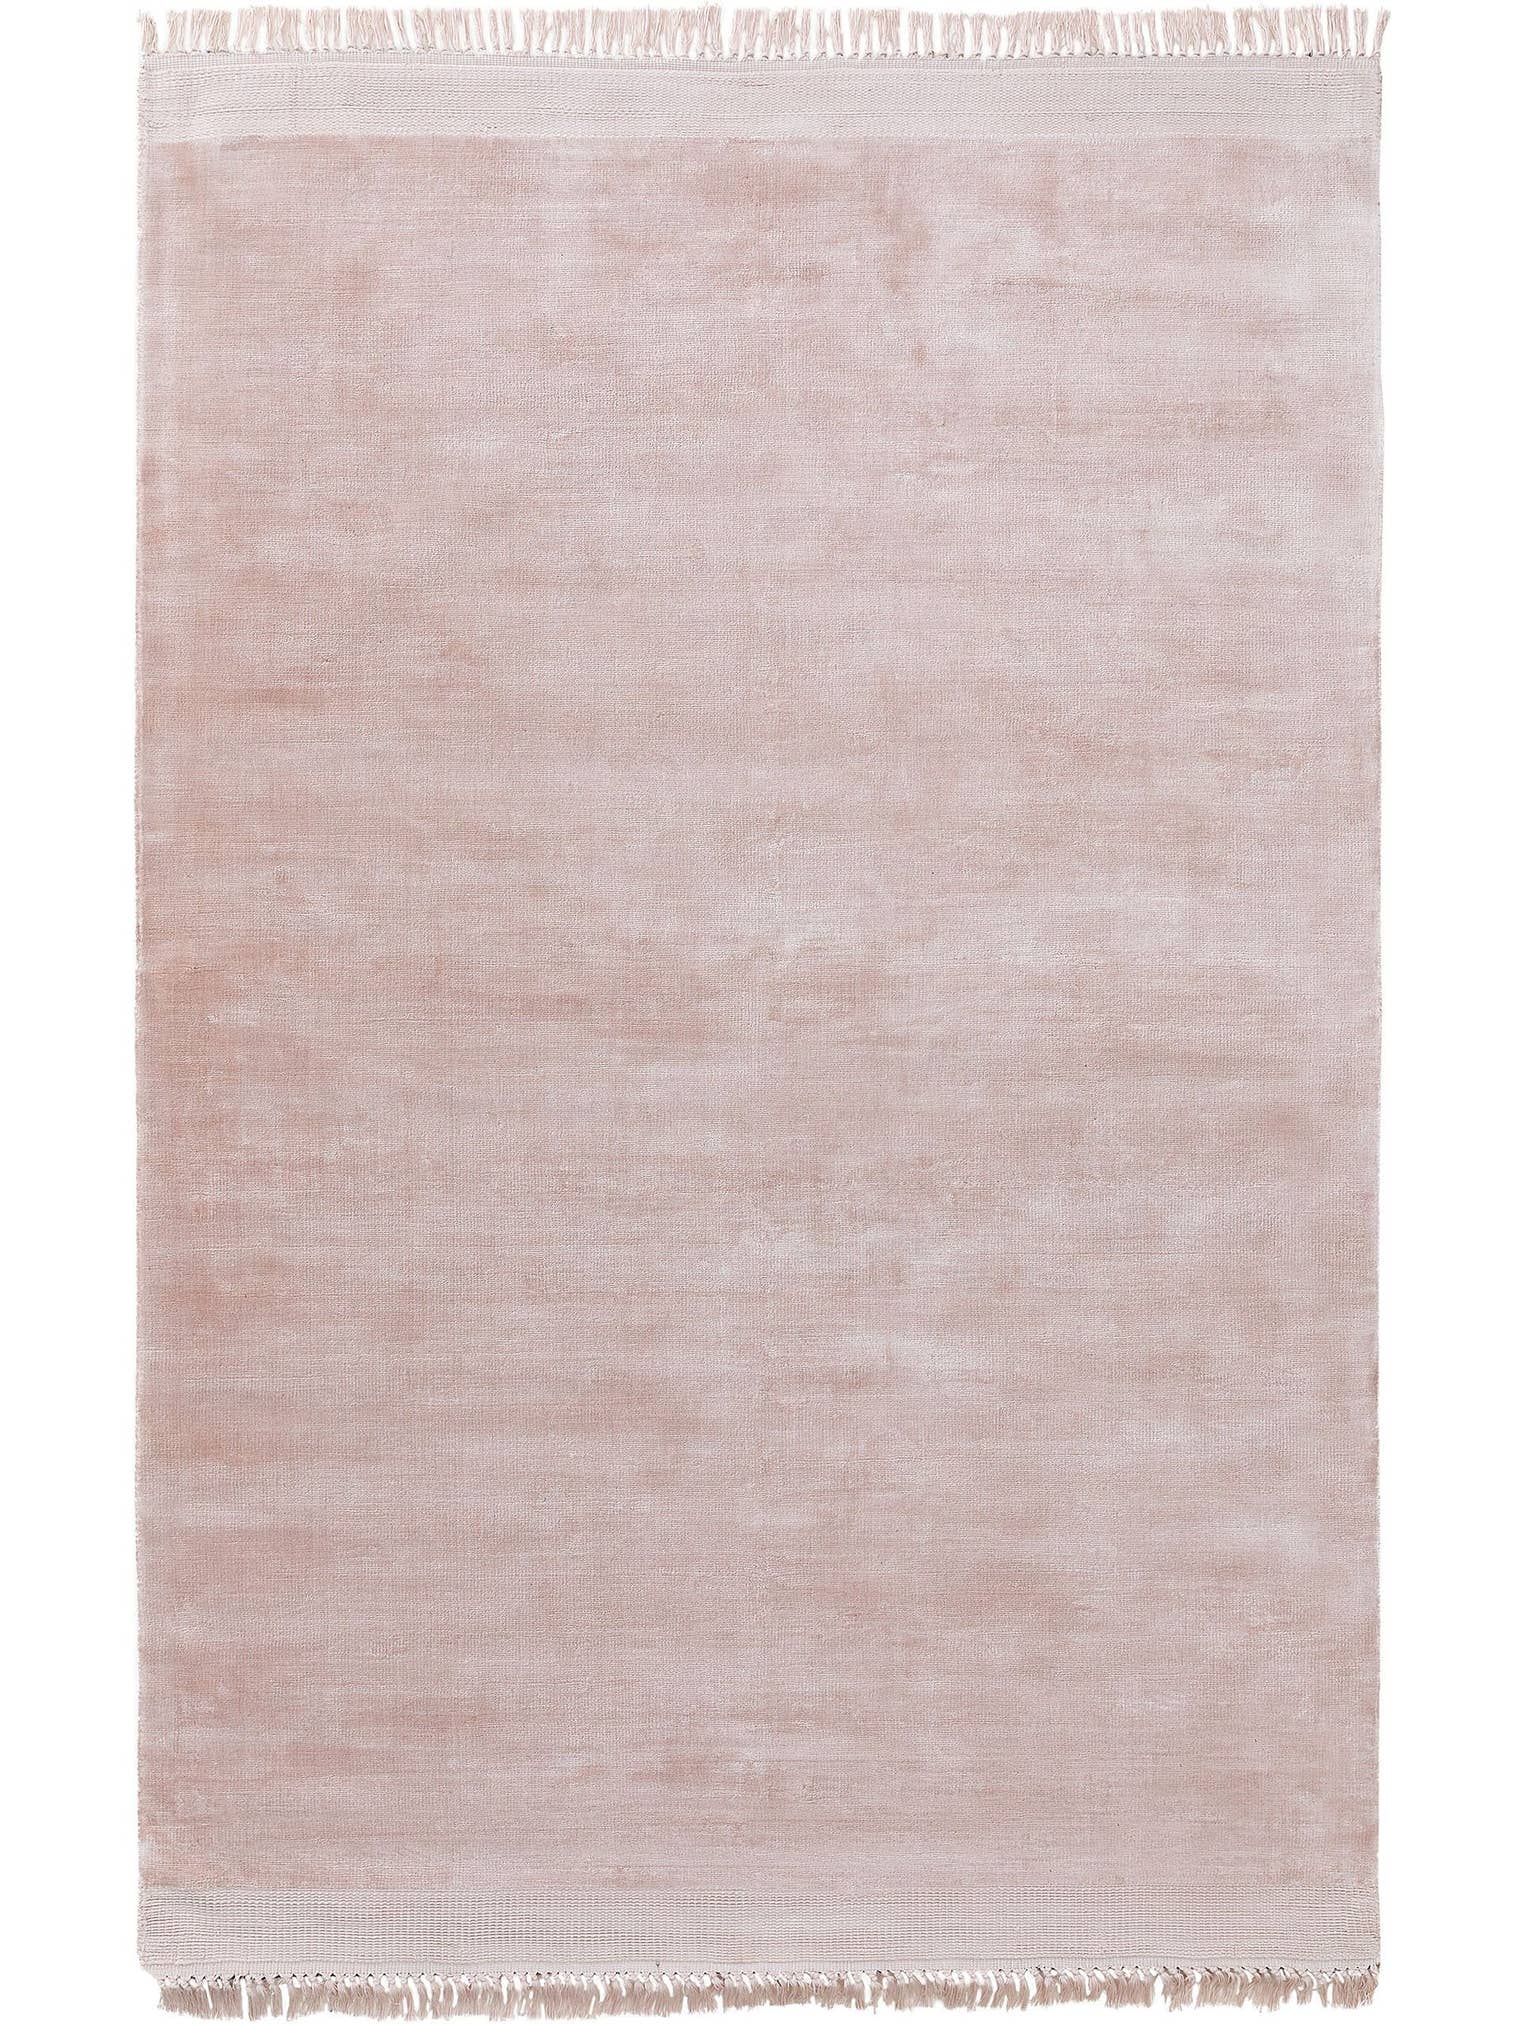 Teppich aus 100% Viskose in Rosa mit 11 bis 20 mm hohem Flor von benuta Finest